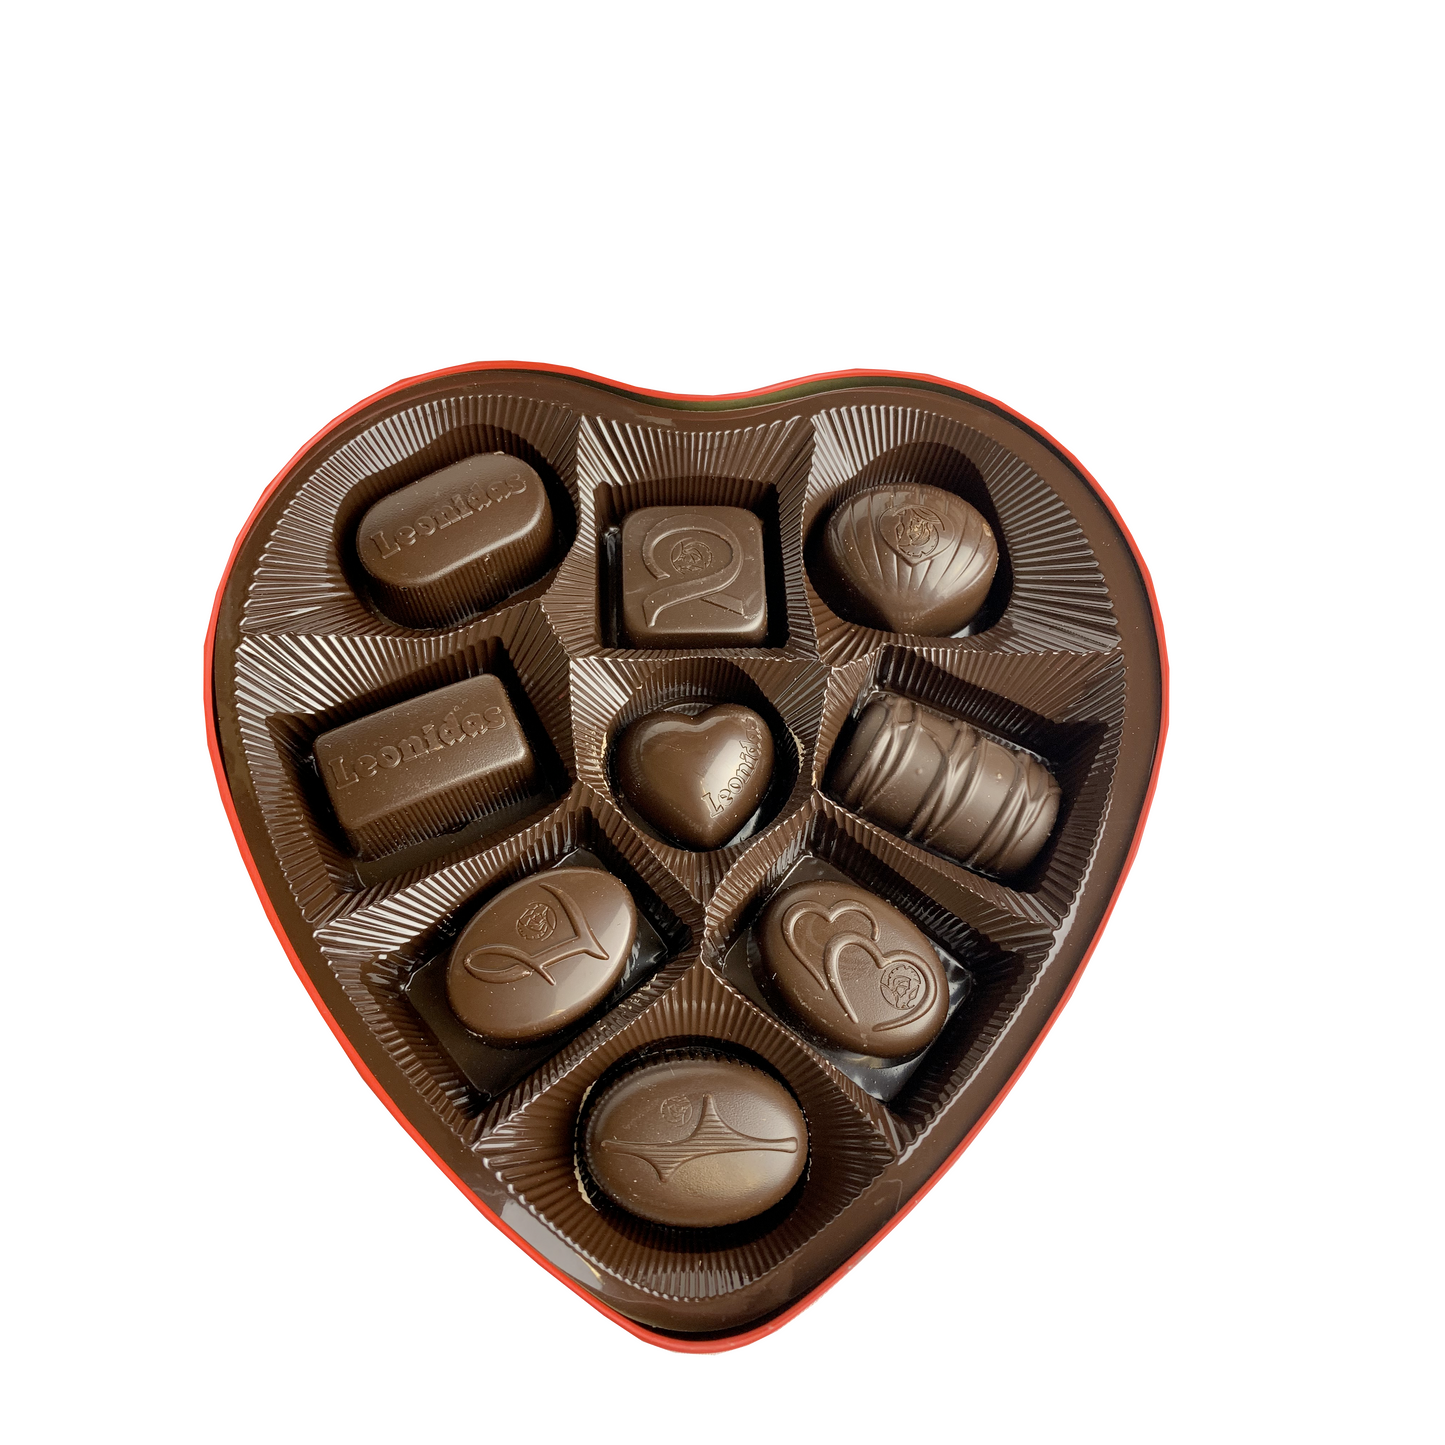 Coeur rempli de 9 chocolats Leonidas (boite en métal)- Saint-Valentin